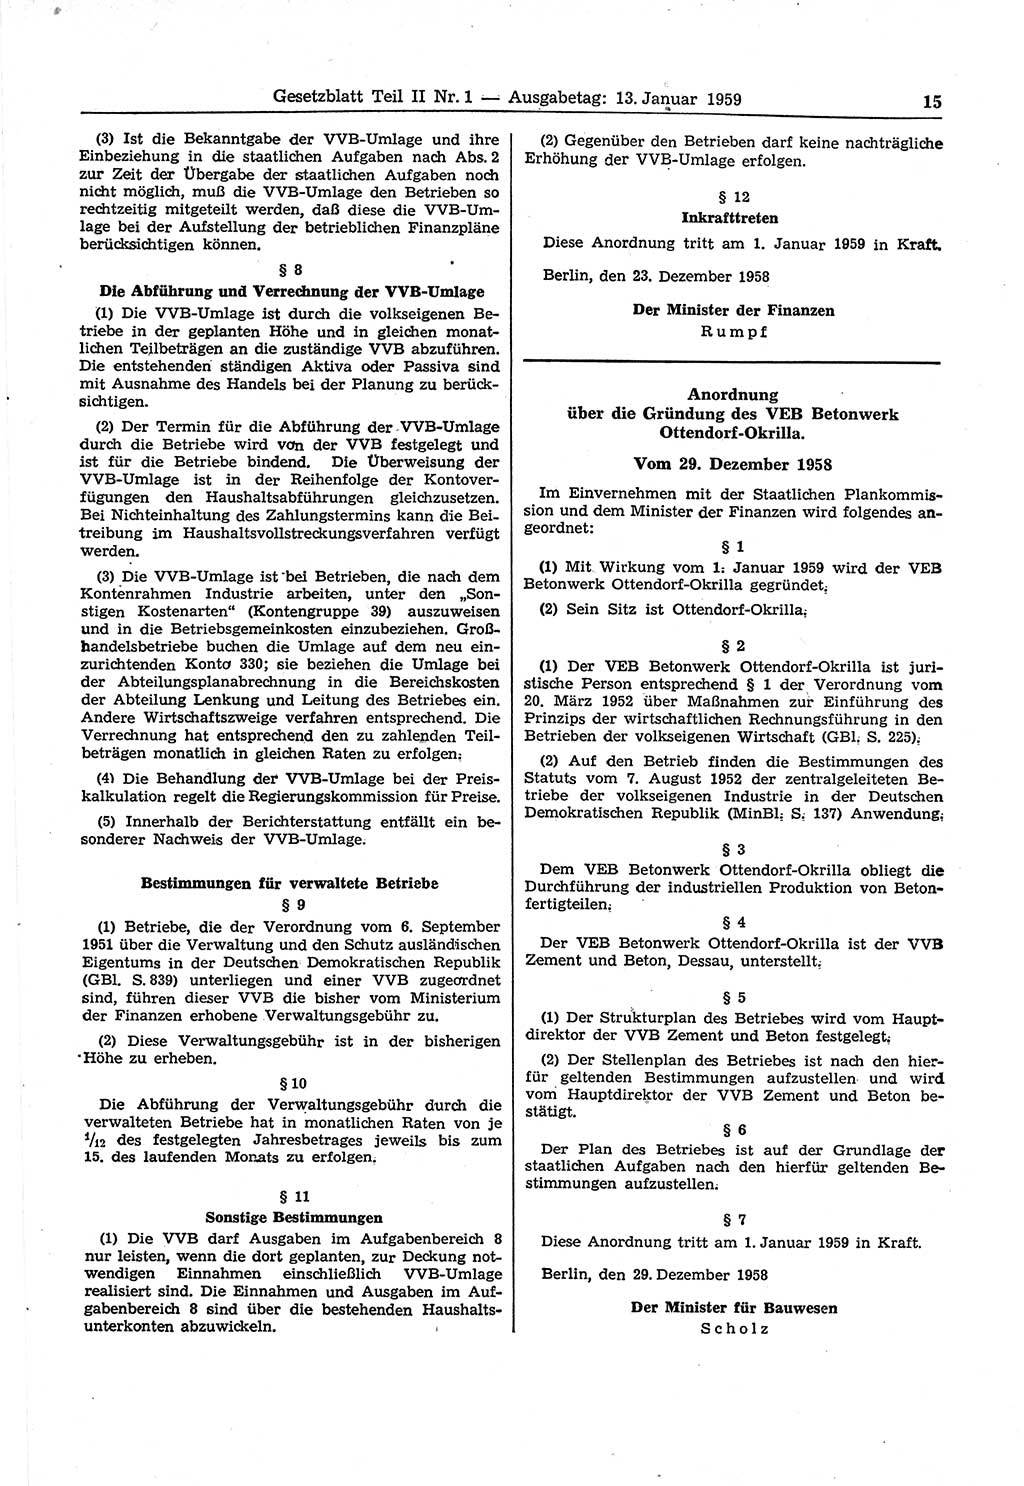 Gesetzblatt (GBl.) der Deutschen Demokratischen Republik (DDR) Teil ⅠⅠ 1959, Seite 15 (GBl. DDR ⅠⅠ 1959, S. 15)